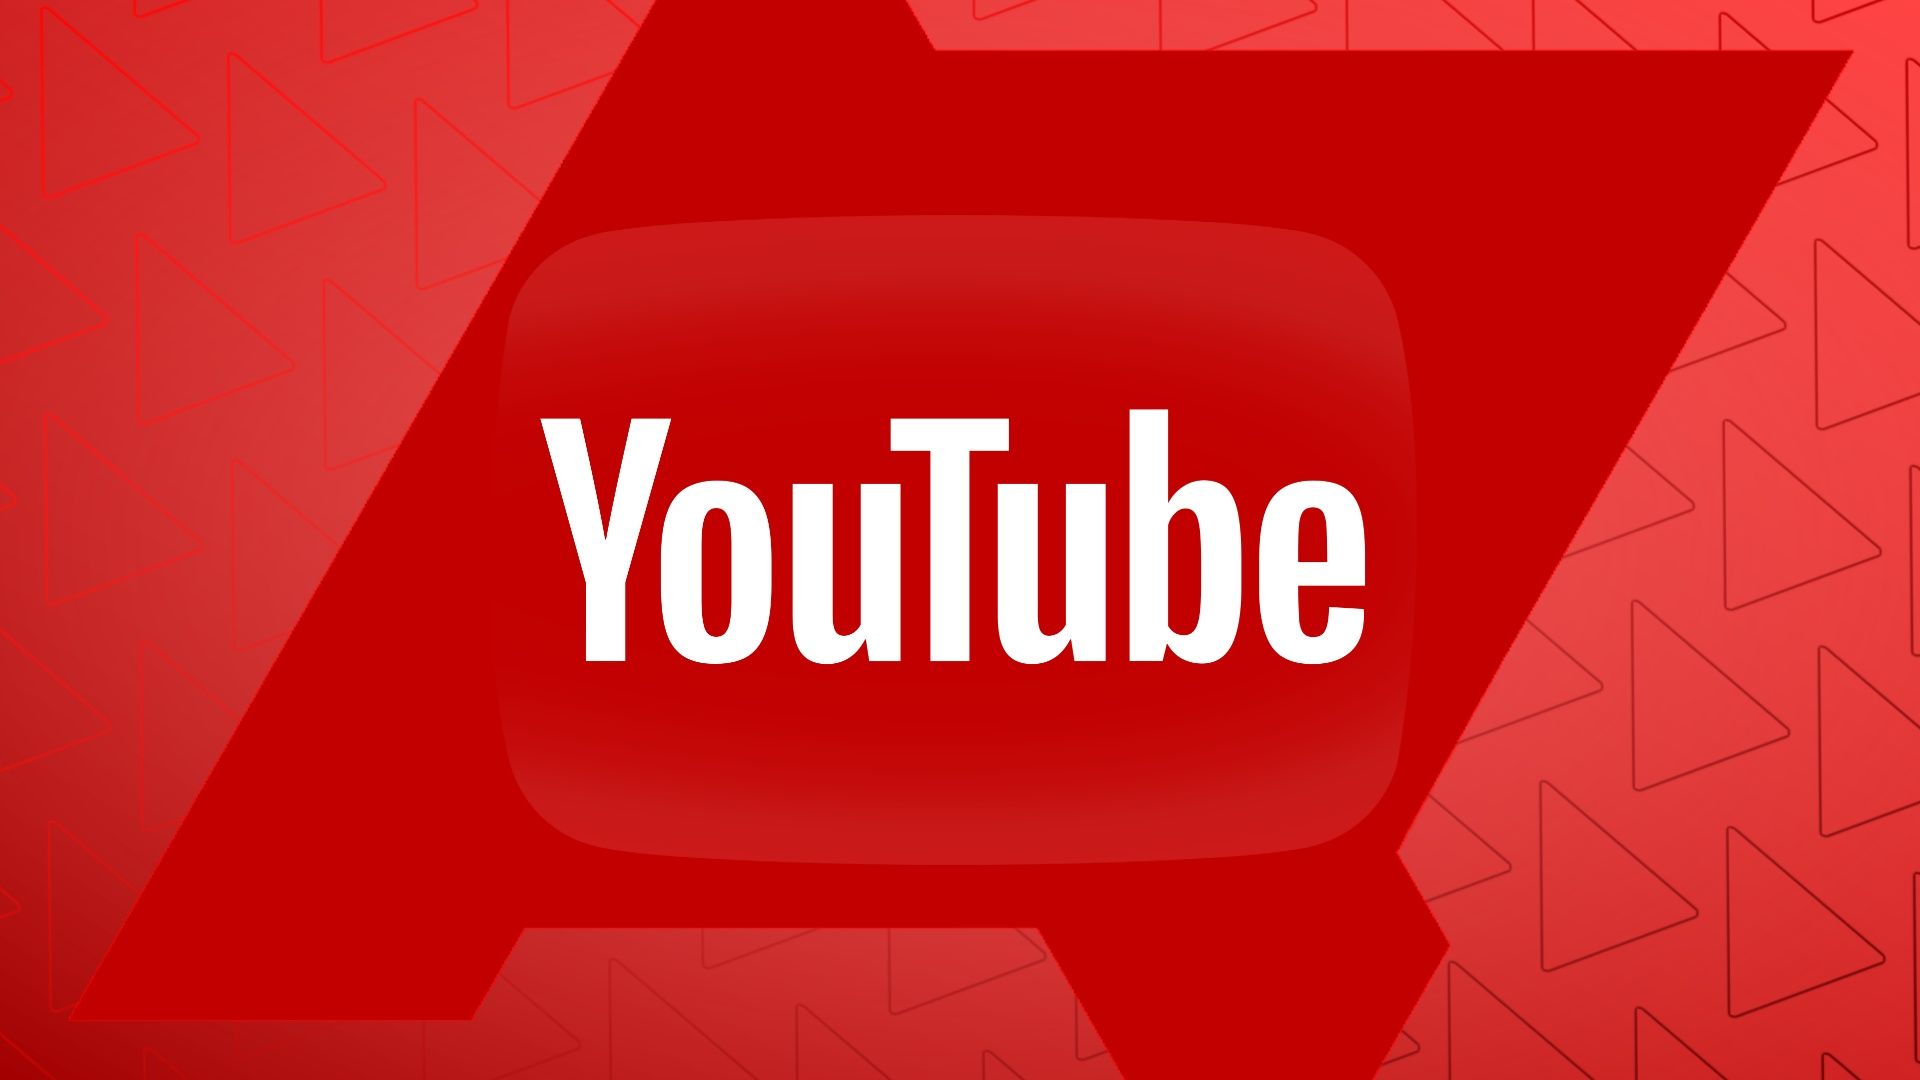 O logotipo do YouTube contra um fundo vermelho